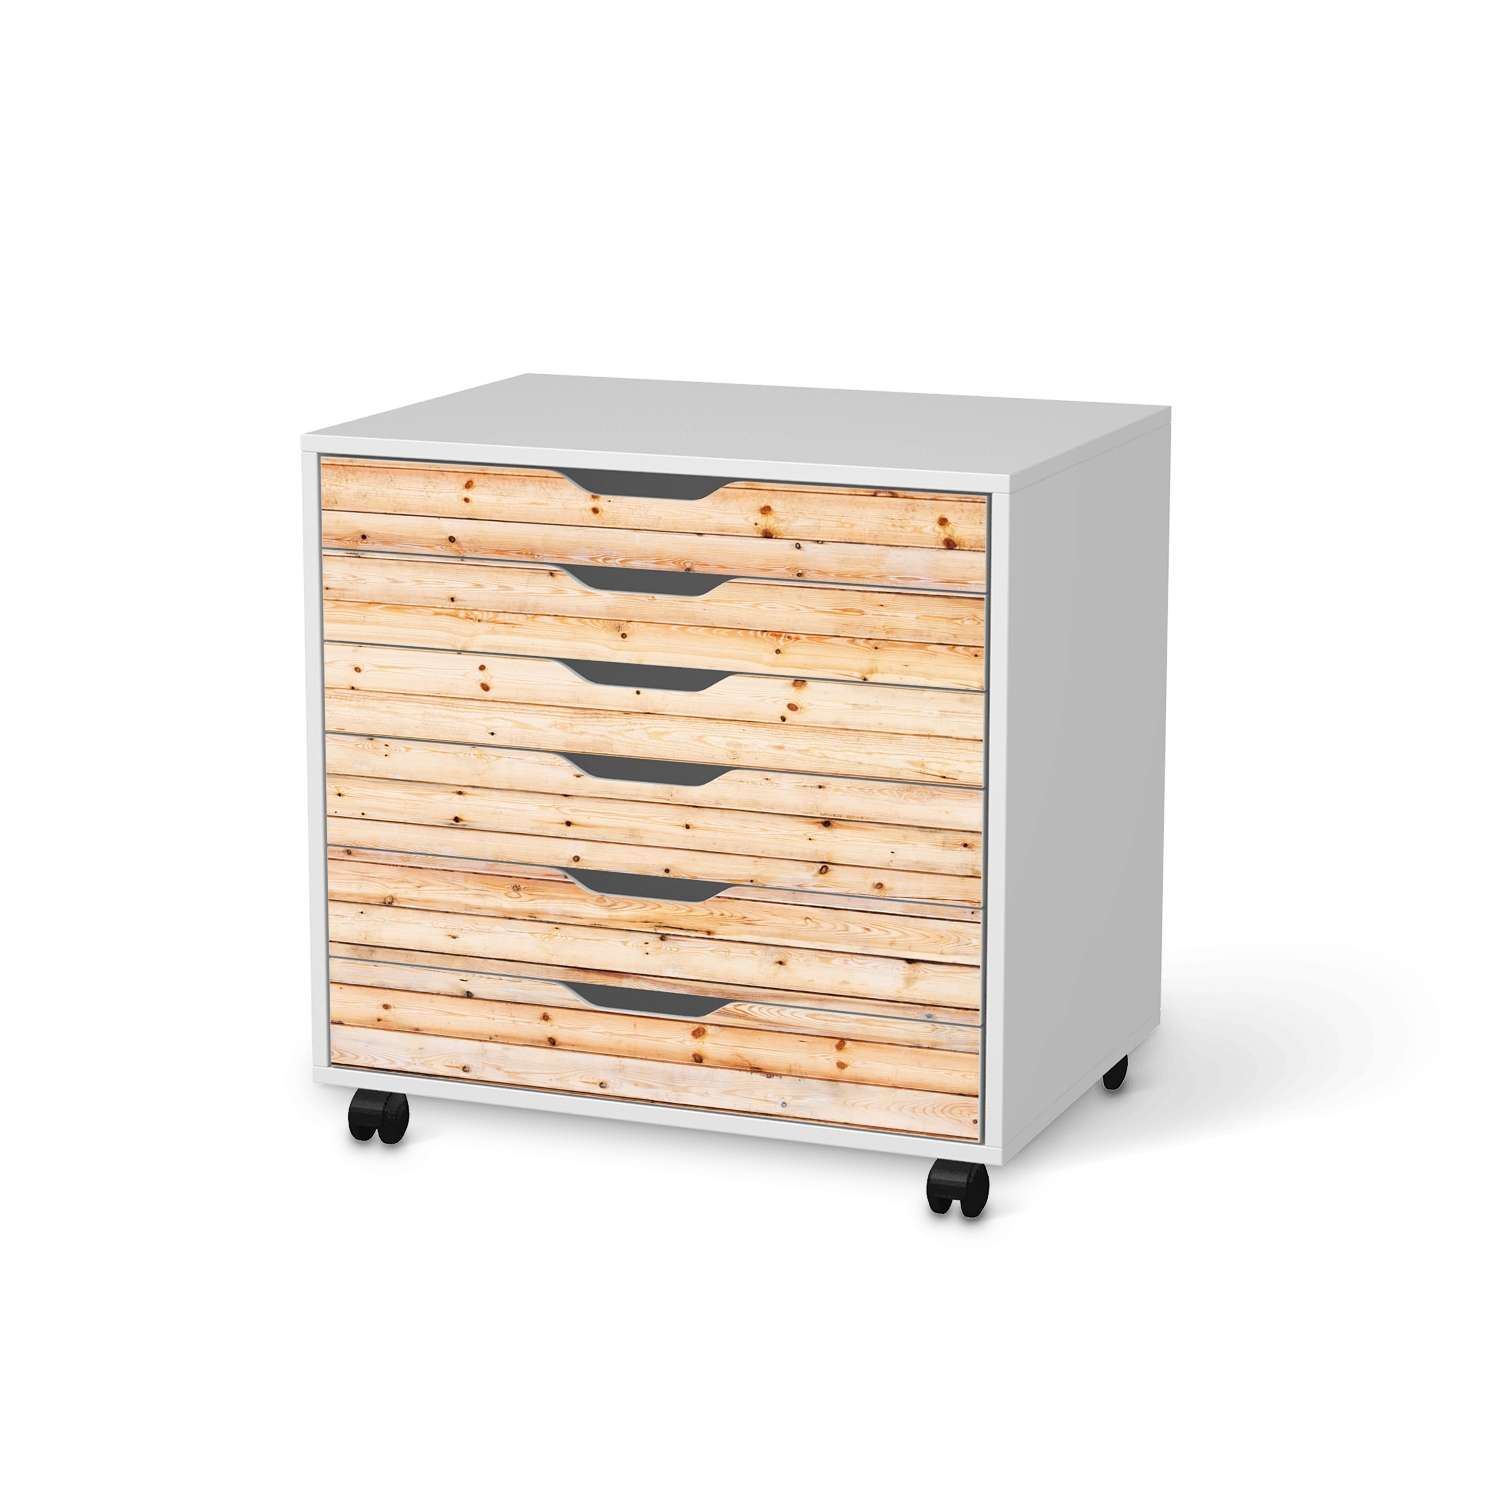 M?belfolie IKEA Alex Rollcontainer 6 Schubladen - Design: Bright Planks von creatisto